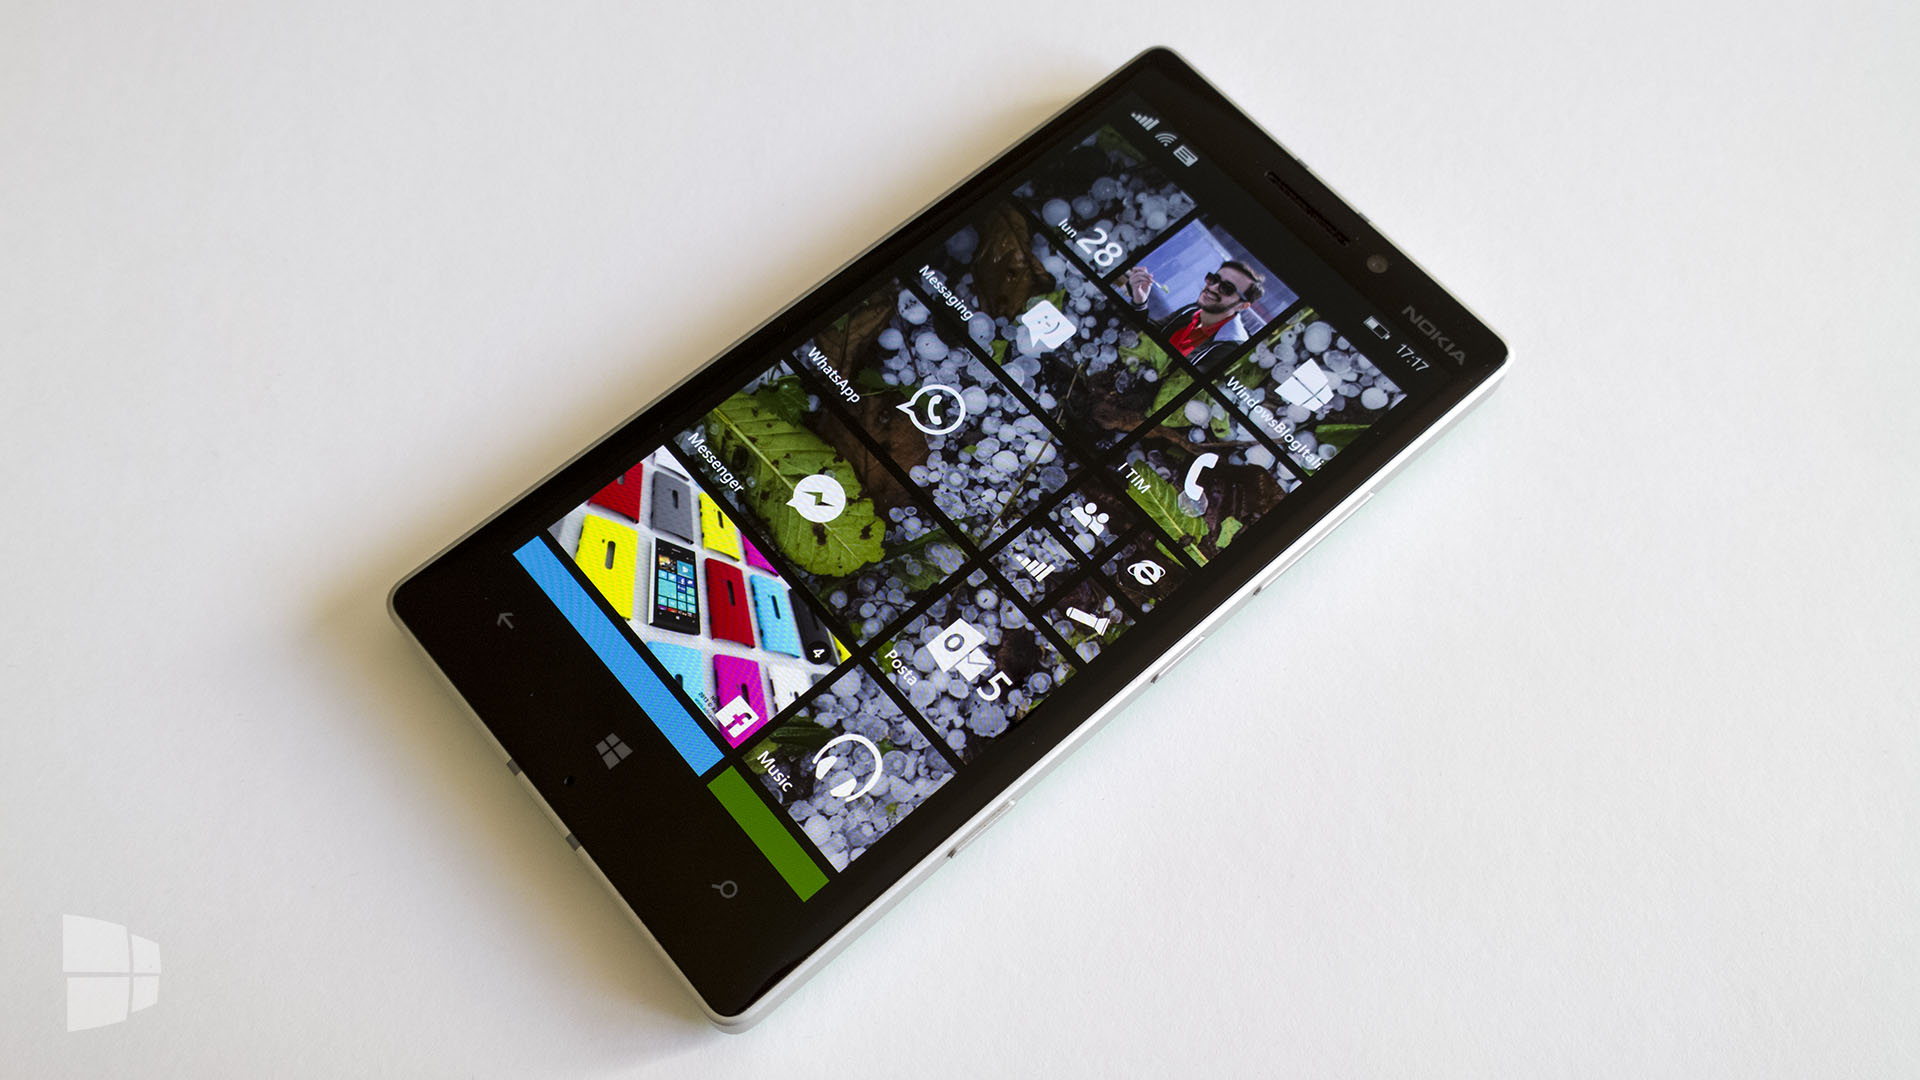 Nokia Lumia 930 Display